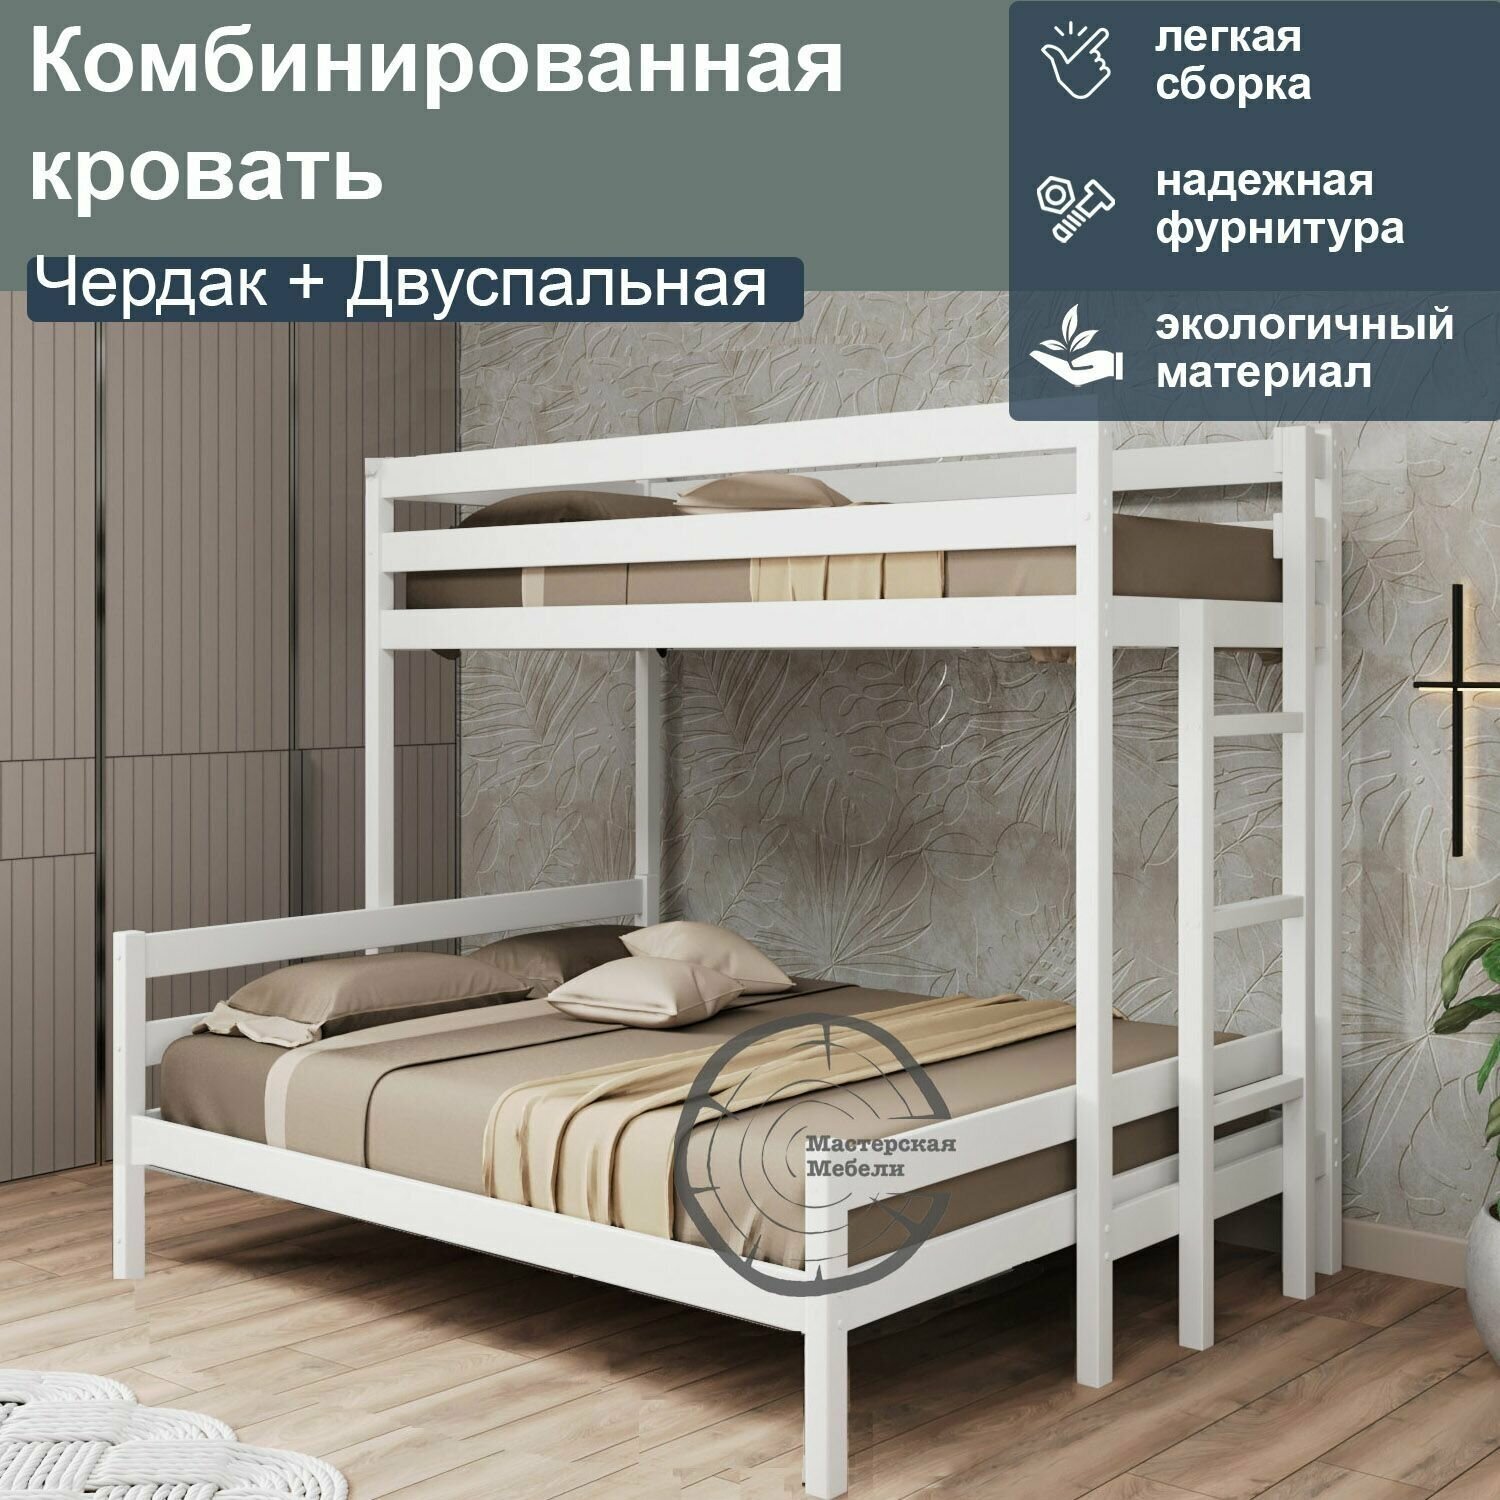 Кровать комбинированная Чердак + Двуспальная, 180, белый